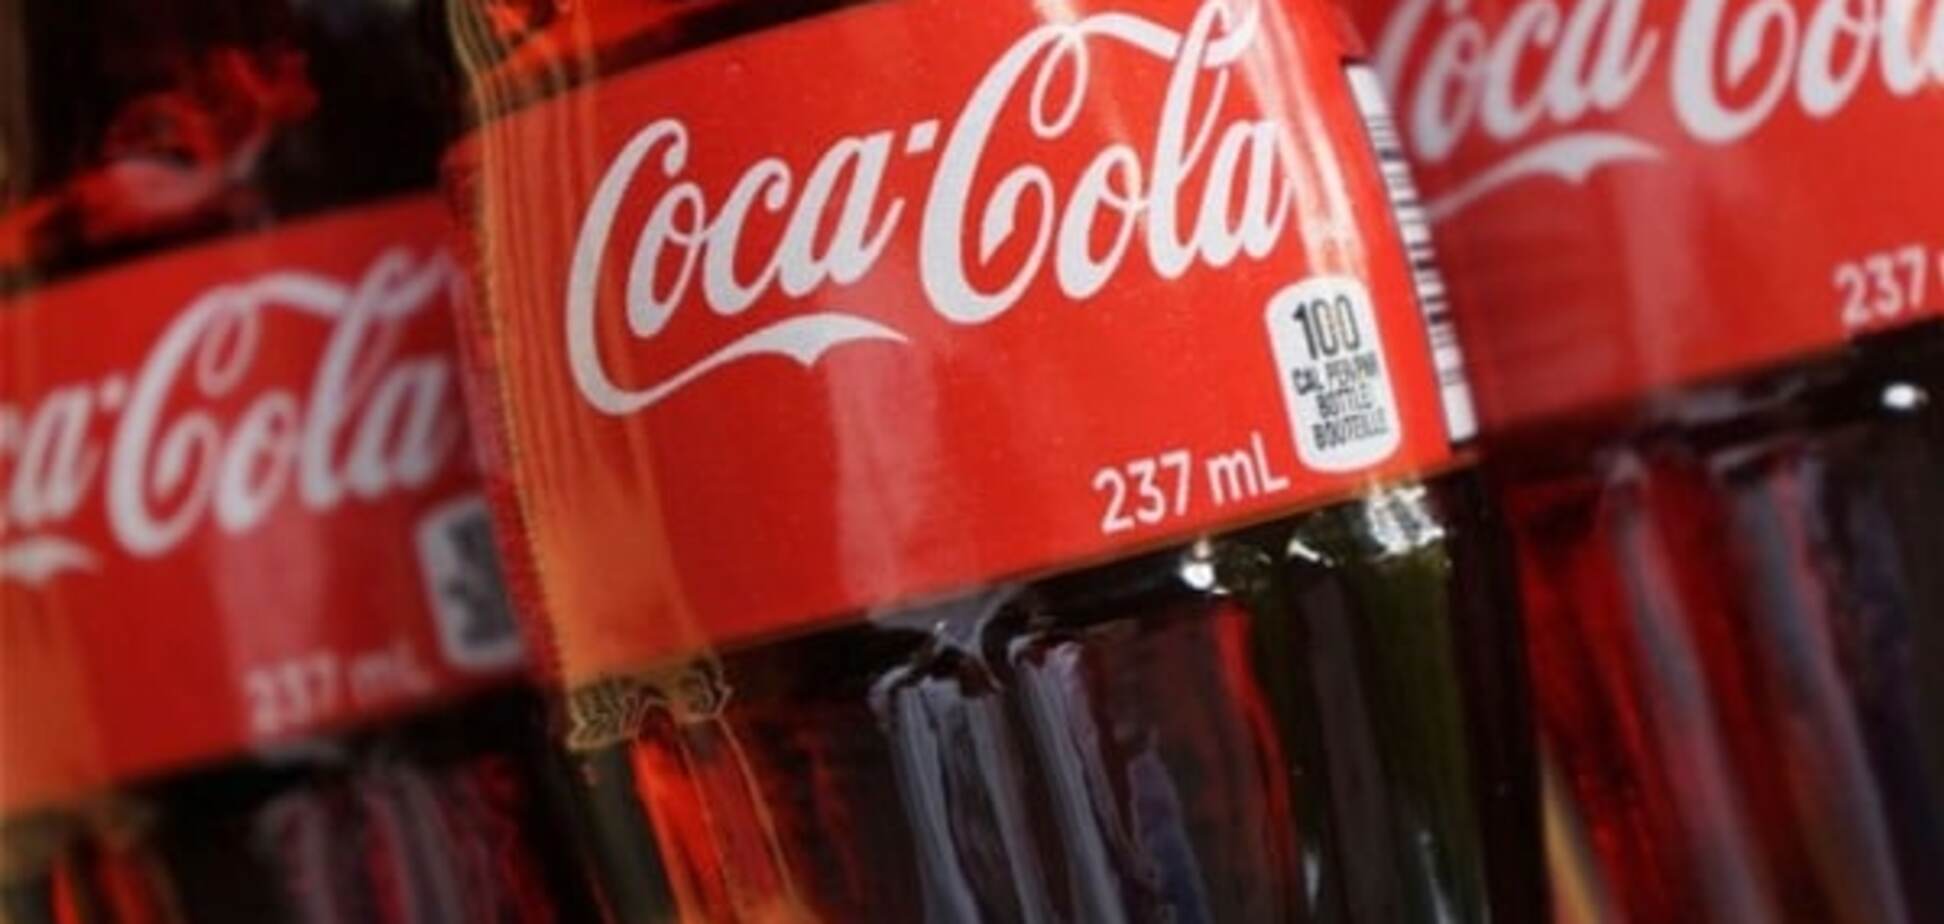 Експерти спрогнозували збиток Coca-Cola після скандалу з Кримом